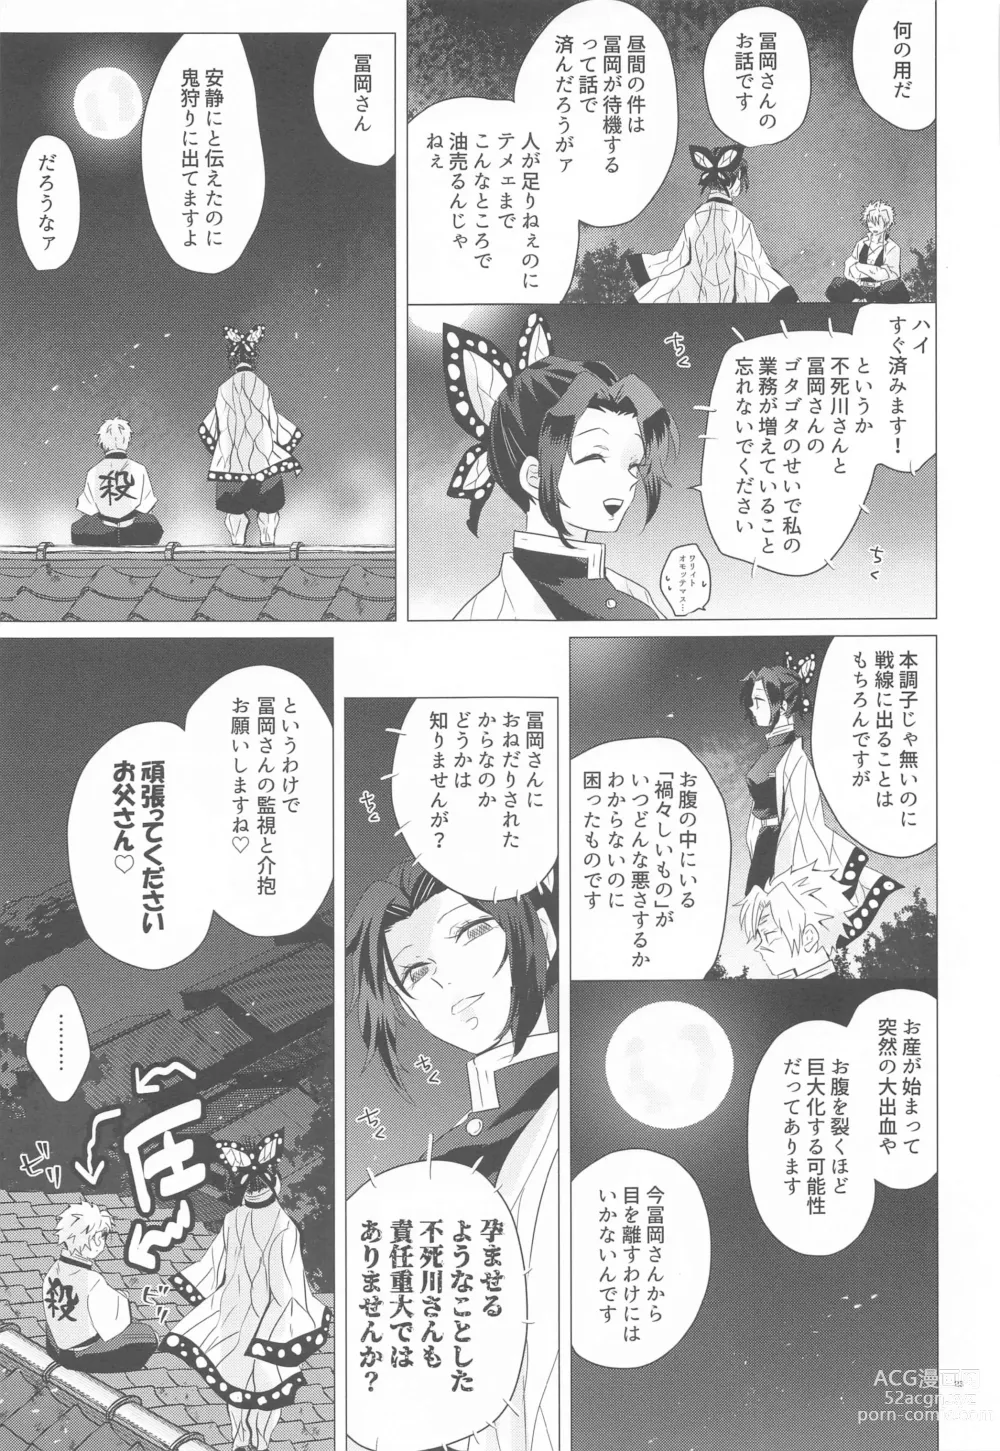 Page 22 of doujinshi Magamaga